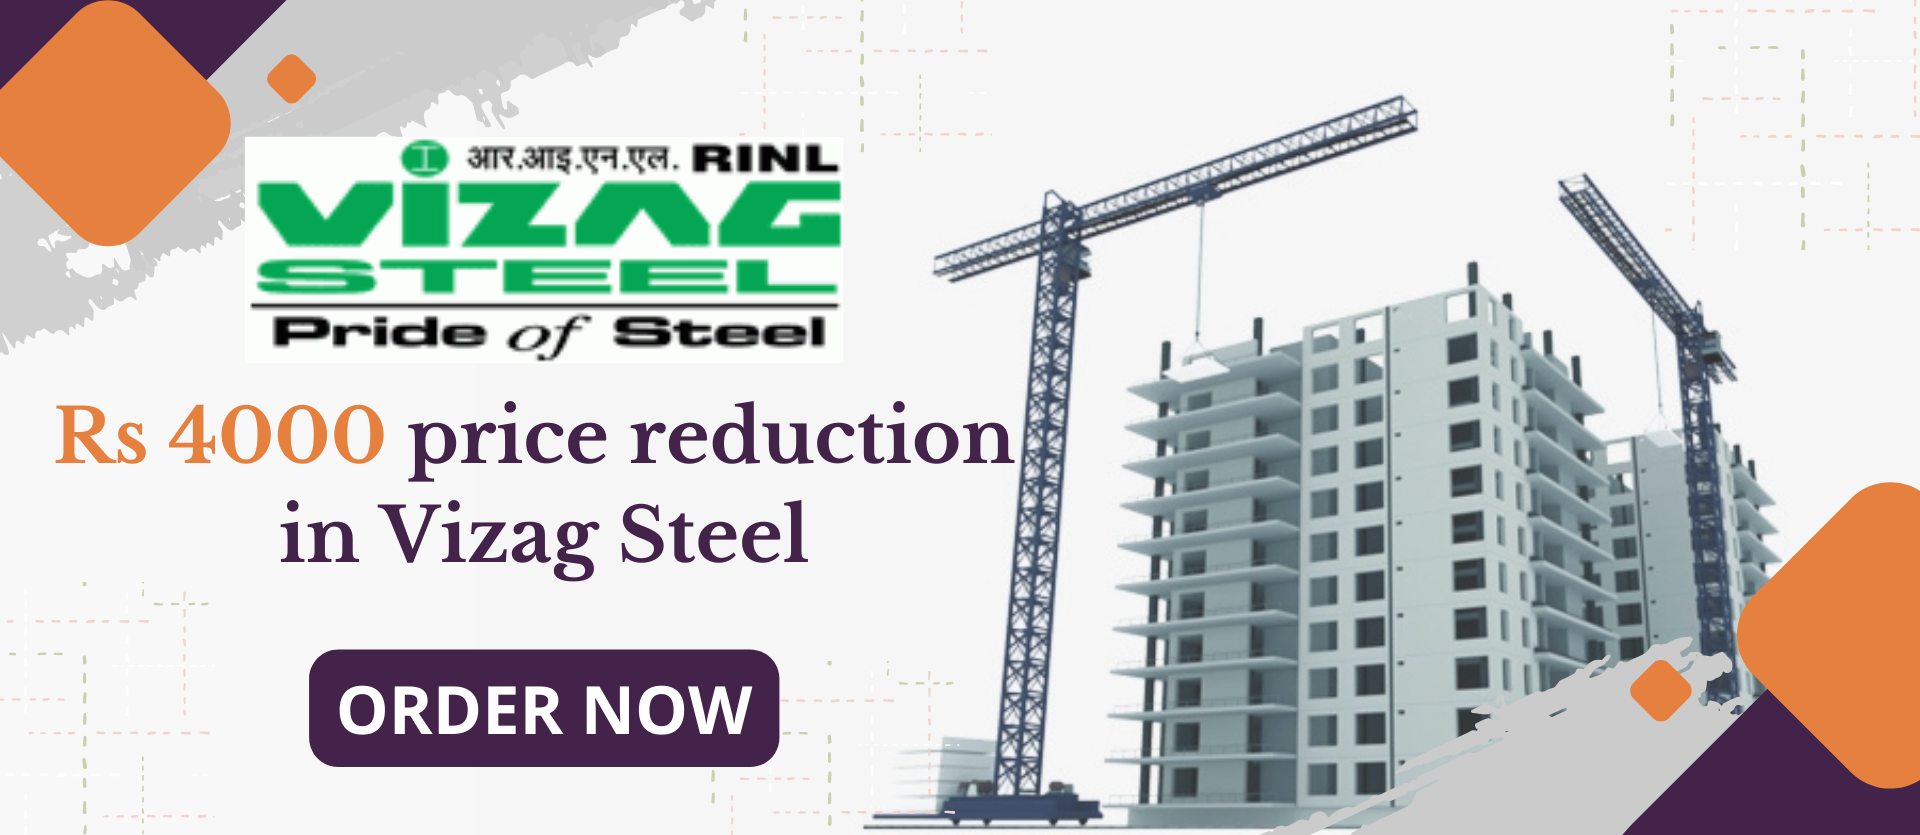 Buy Steel Online India